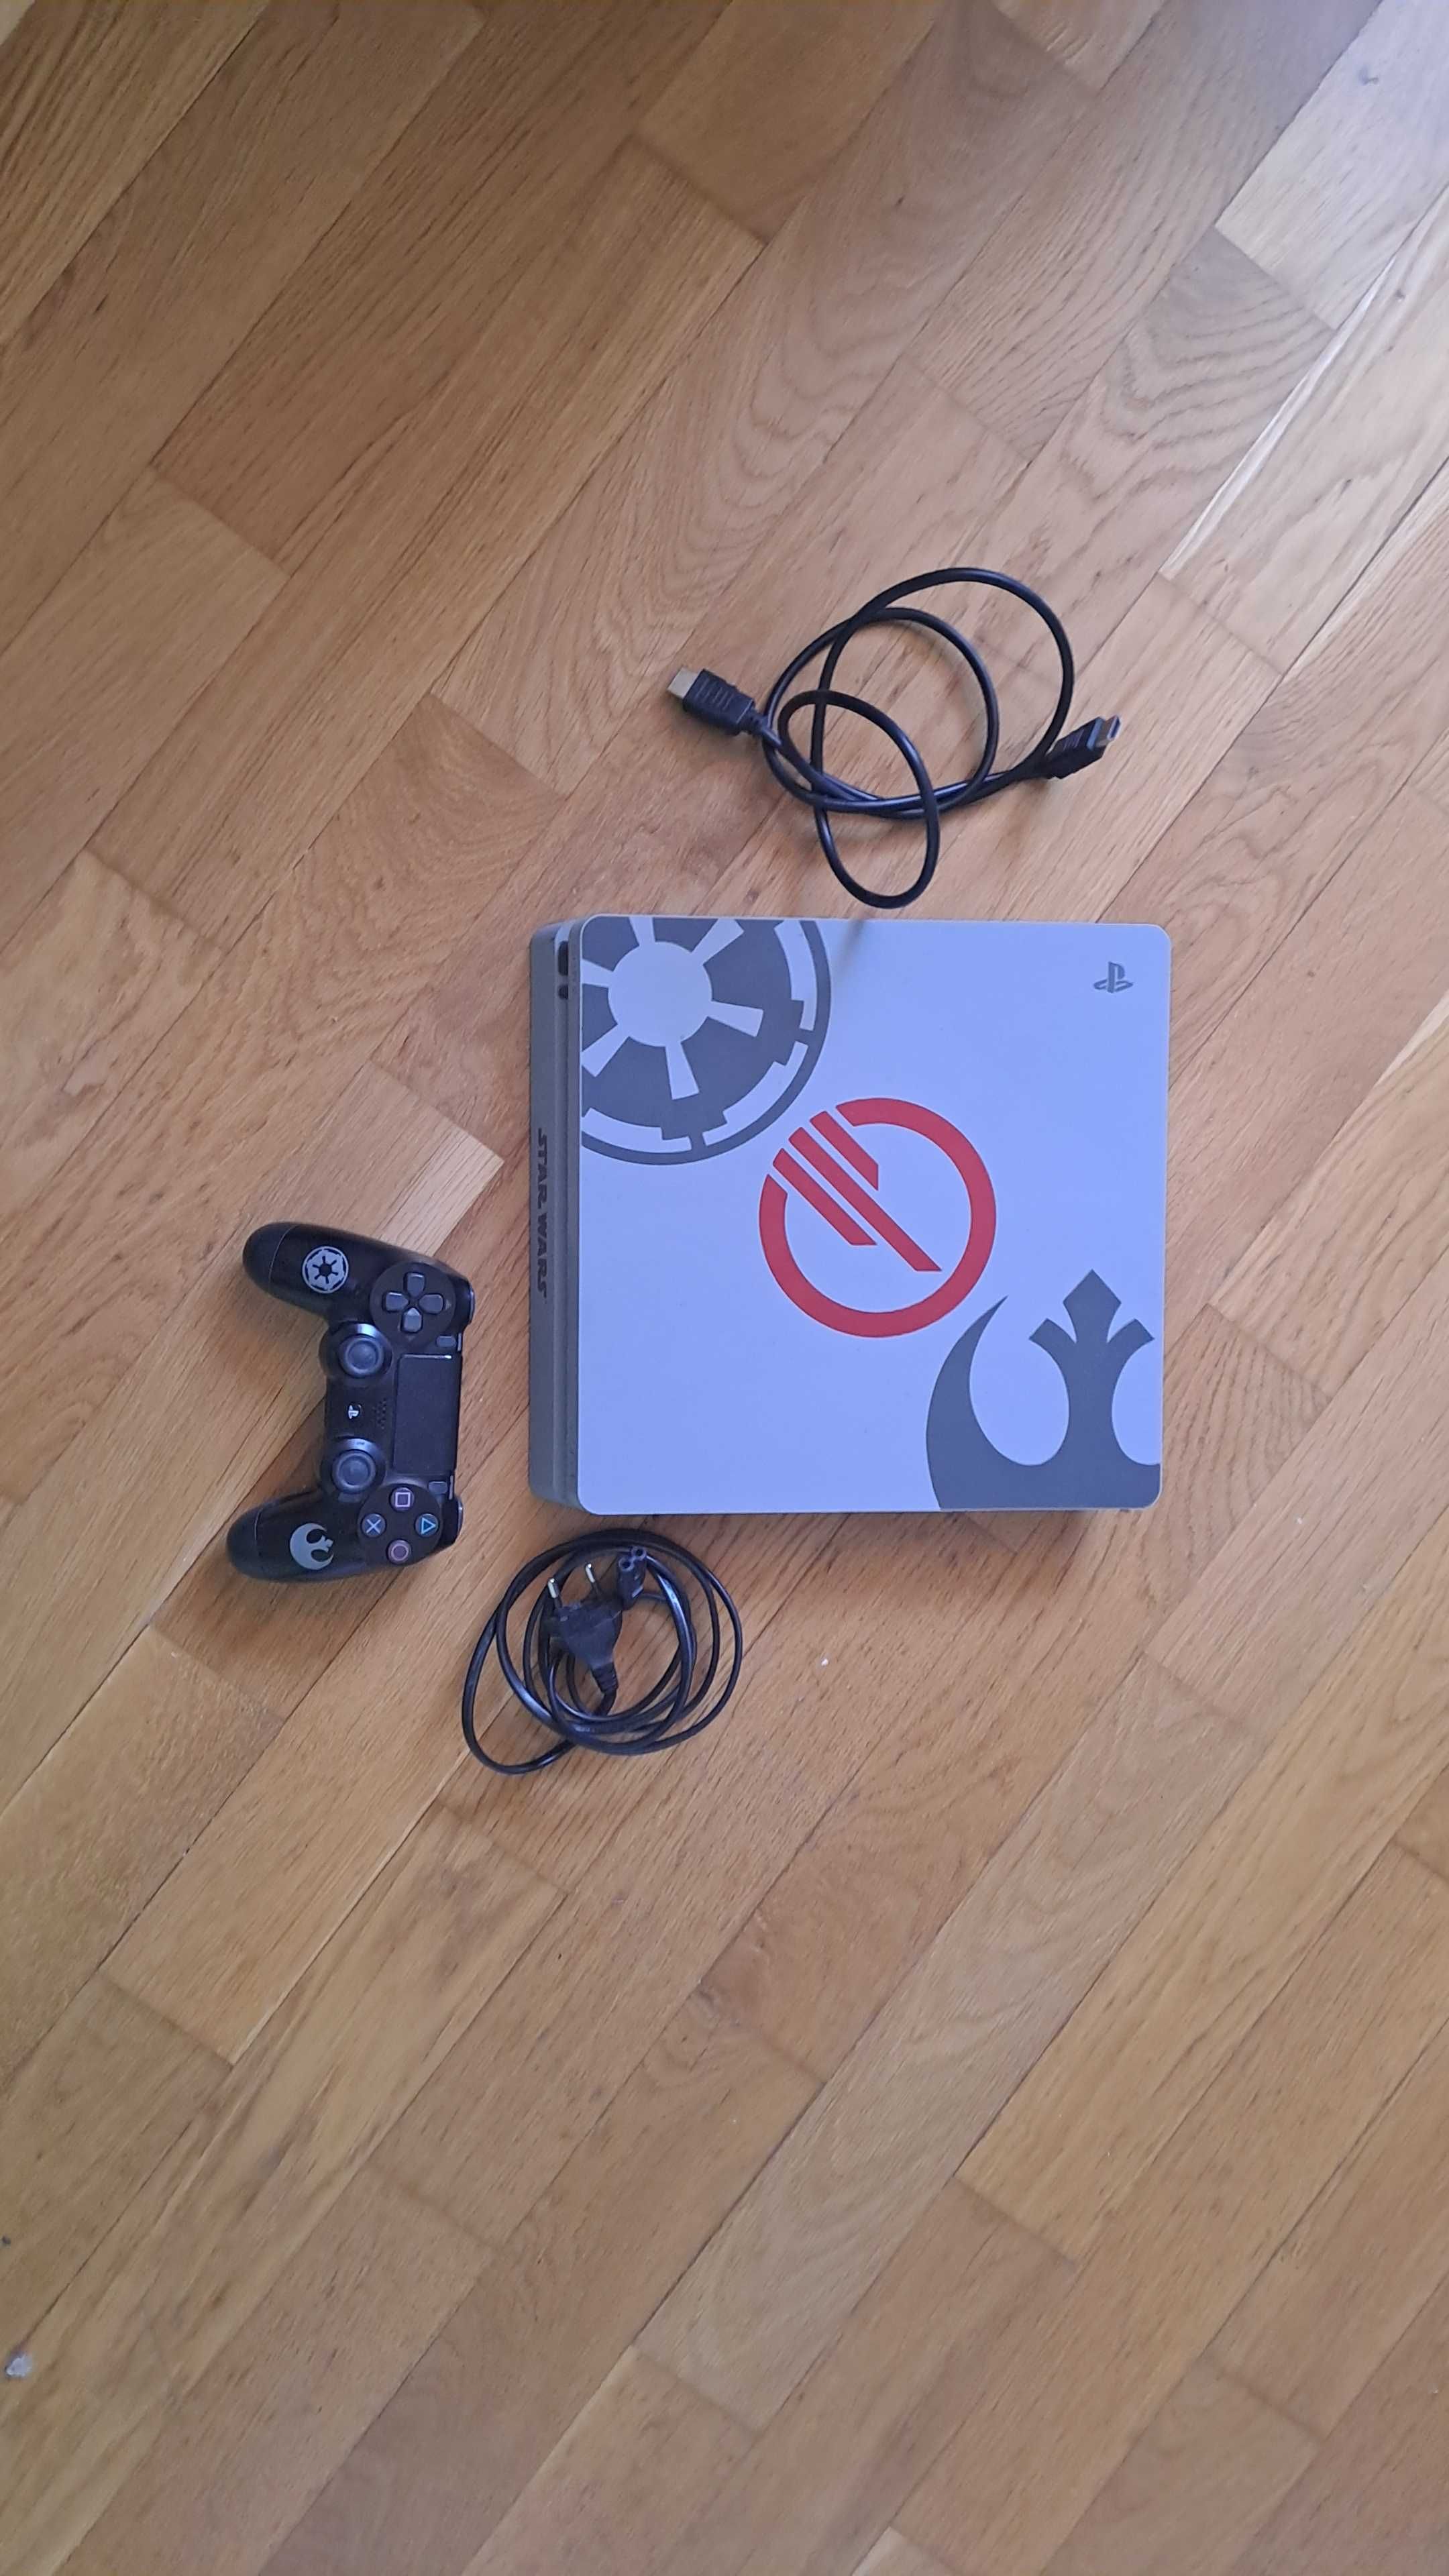 Sony PlayStation 4 Battlefront II Deluxe, Wraz z zestawem gier.